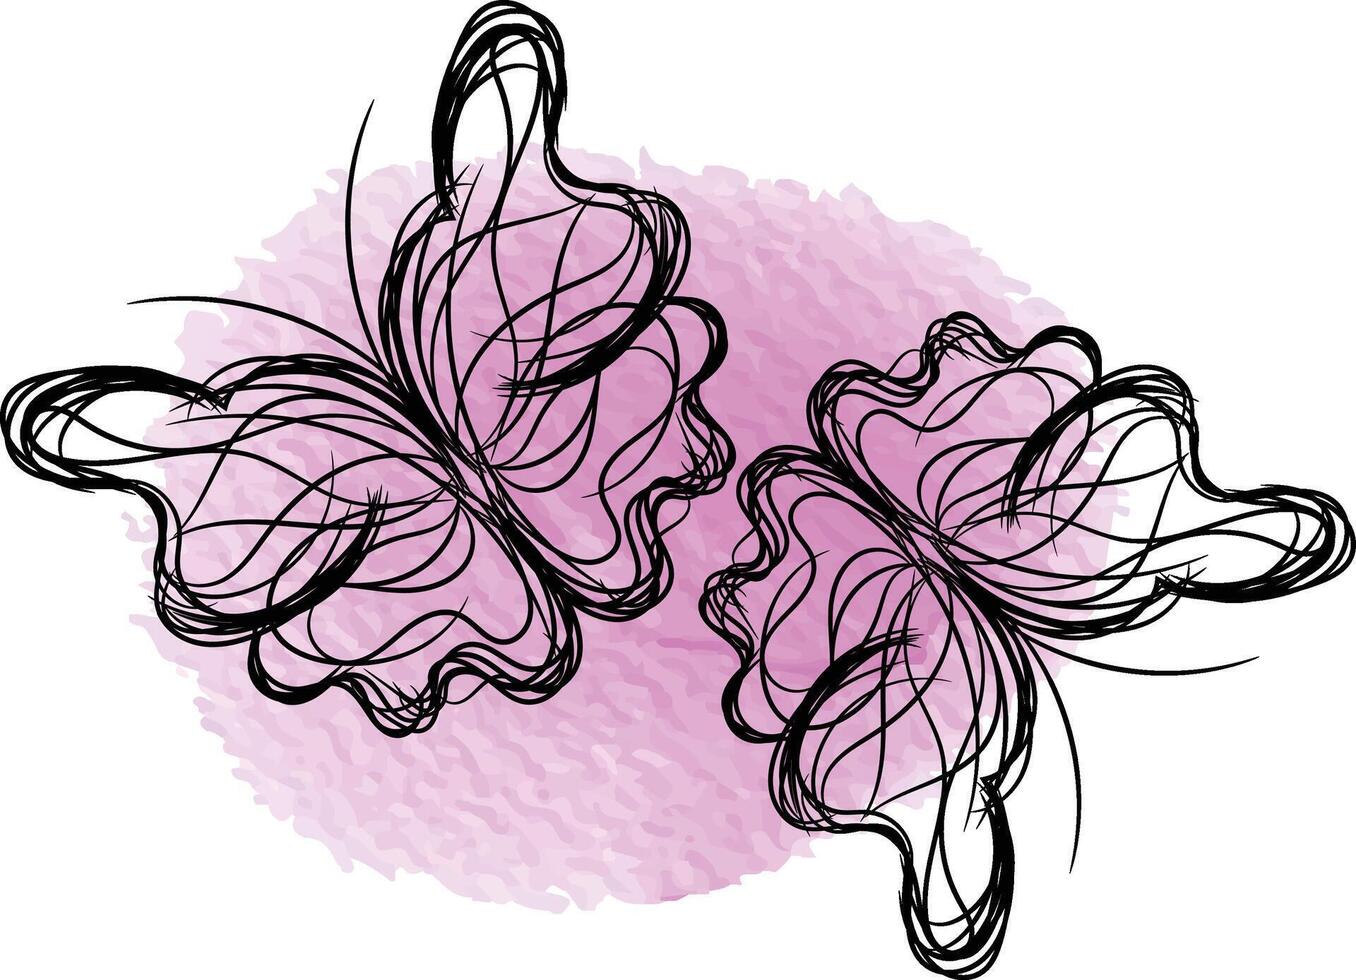 Schmetterlingsumriss mit gezeichneter Detailsammlung vektor